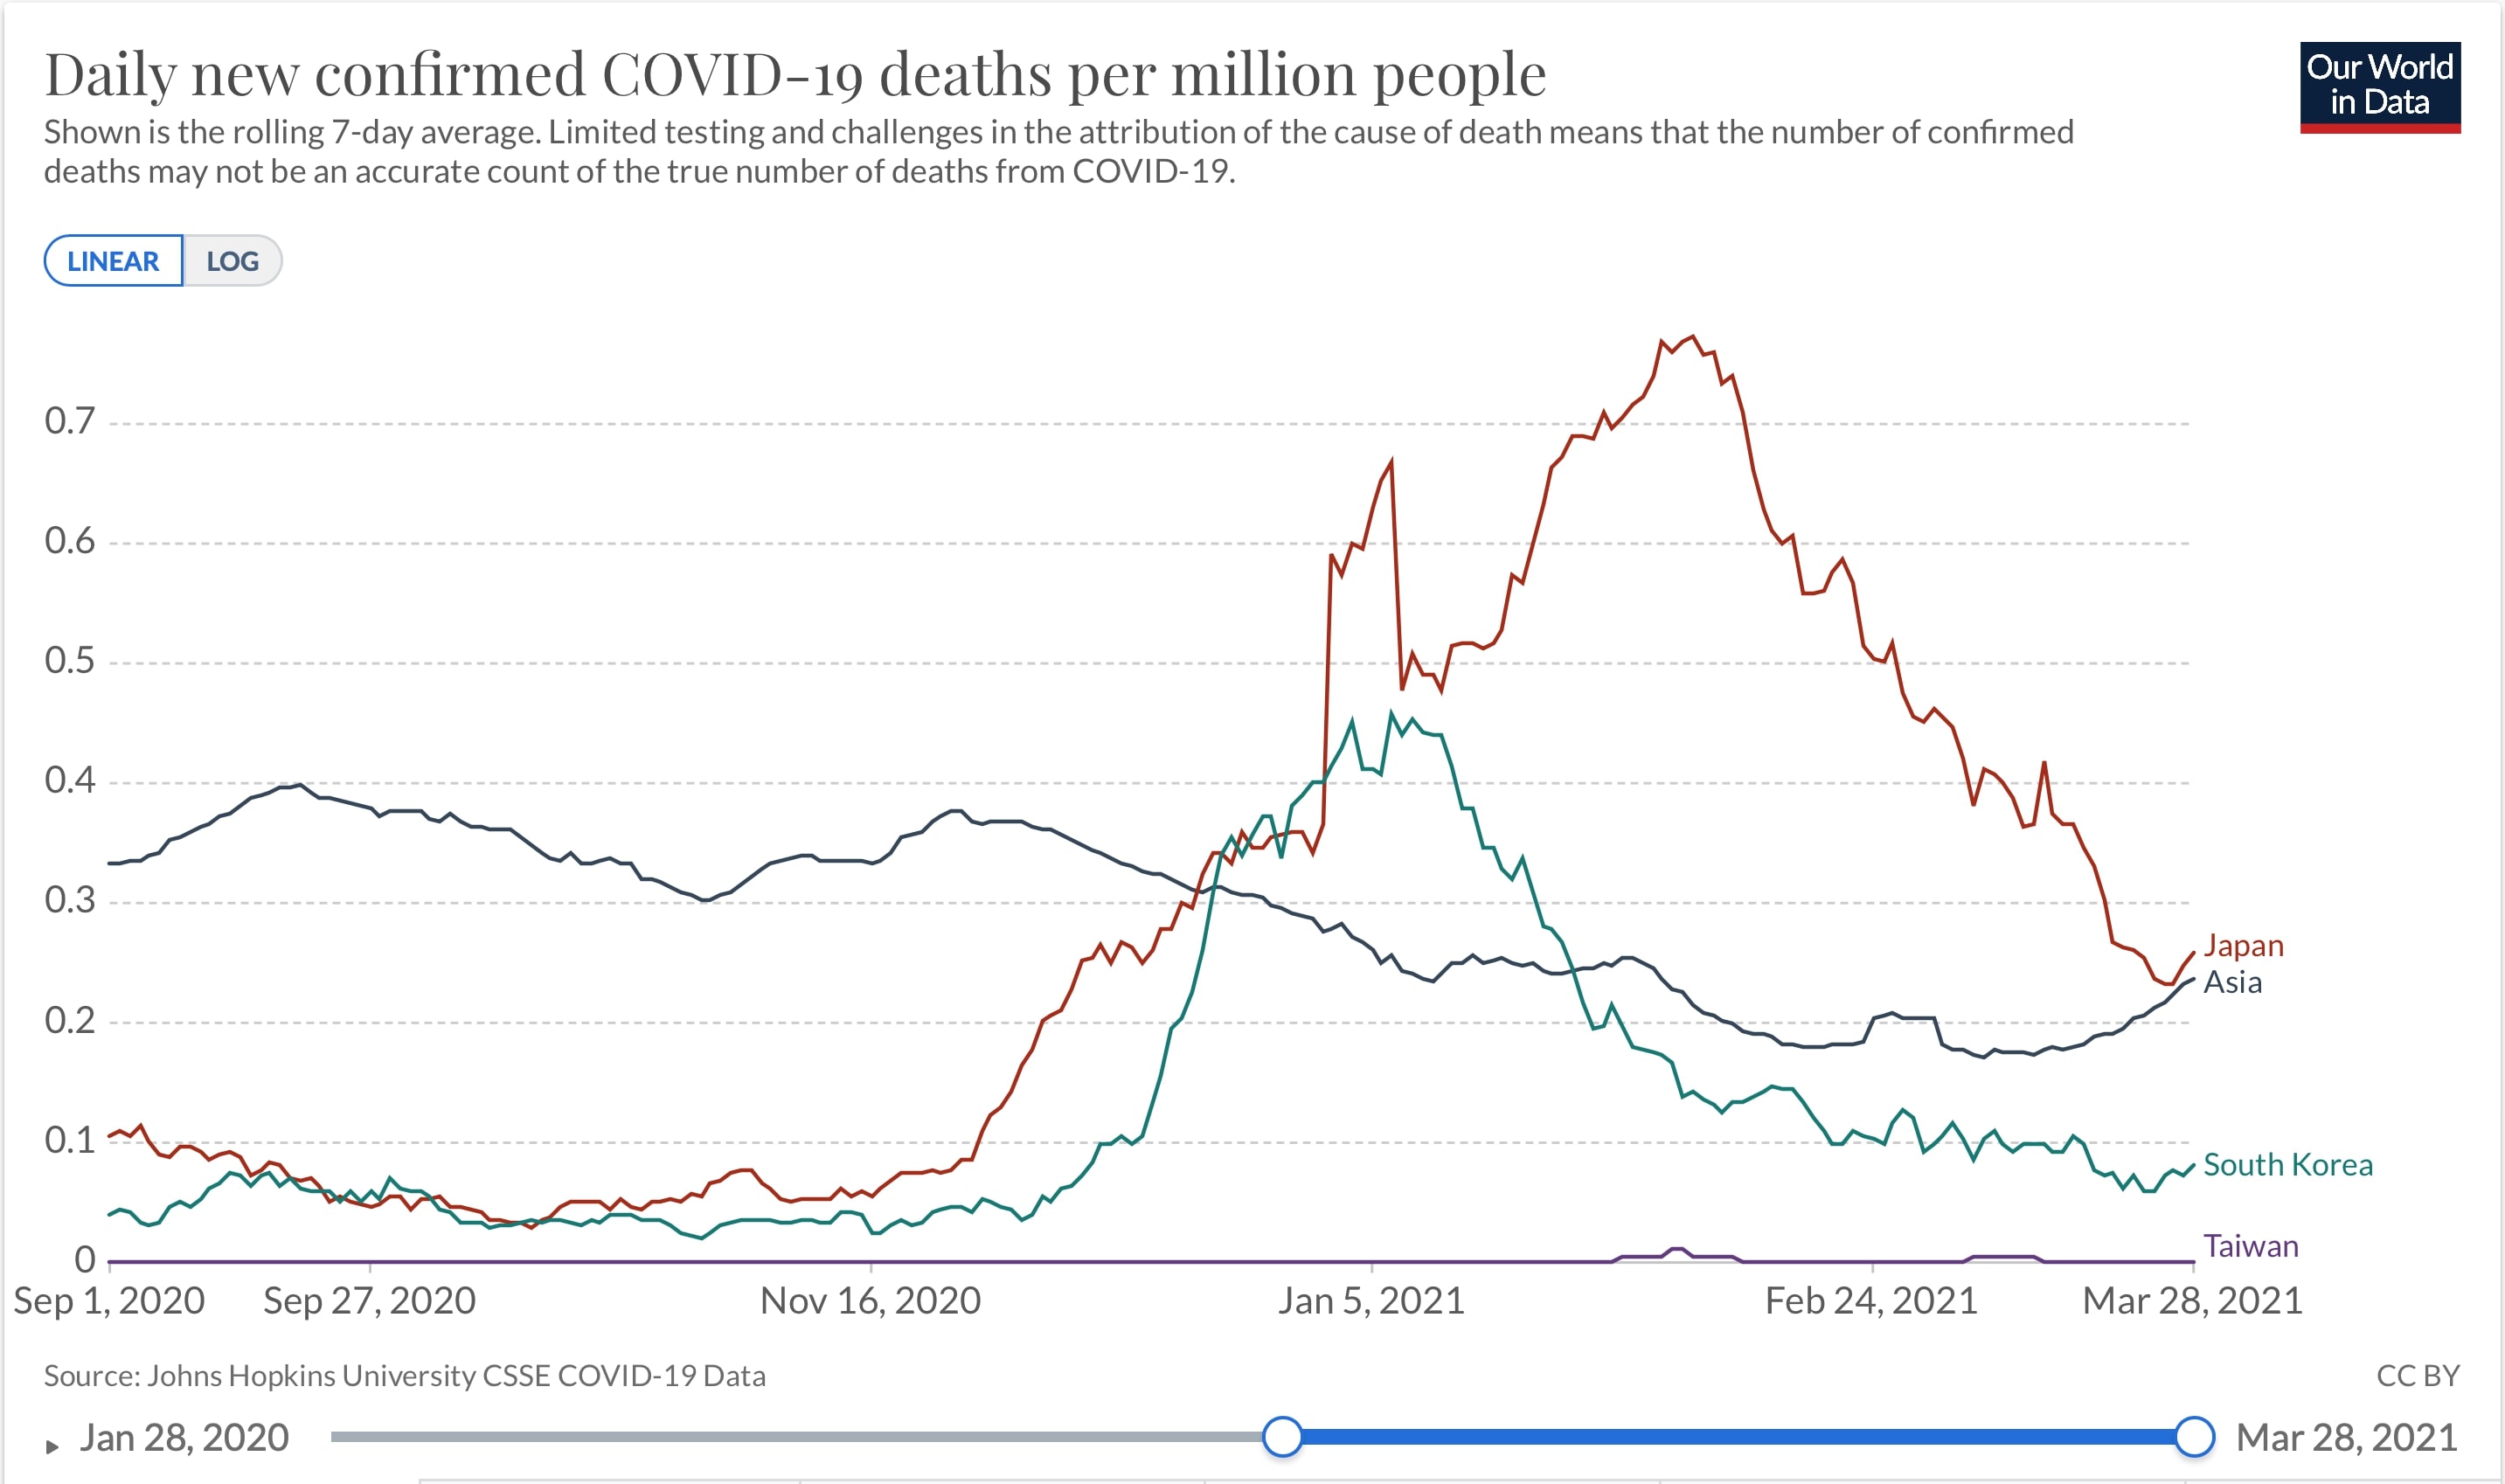 日本、韓国、台湾およびアジア全体での百万人あたり日毎死亡者数の推移(ppm 7日移動平均 線形)2020/09/01-2021/03/28